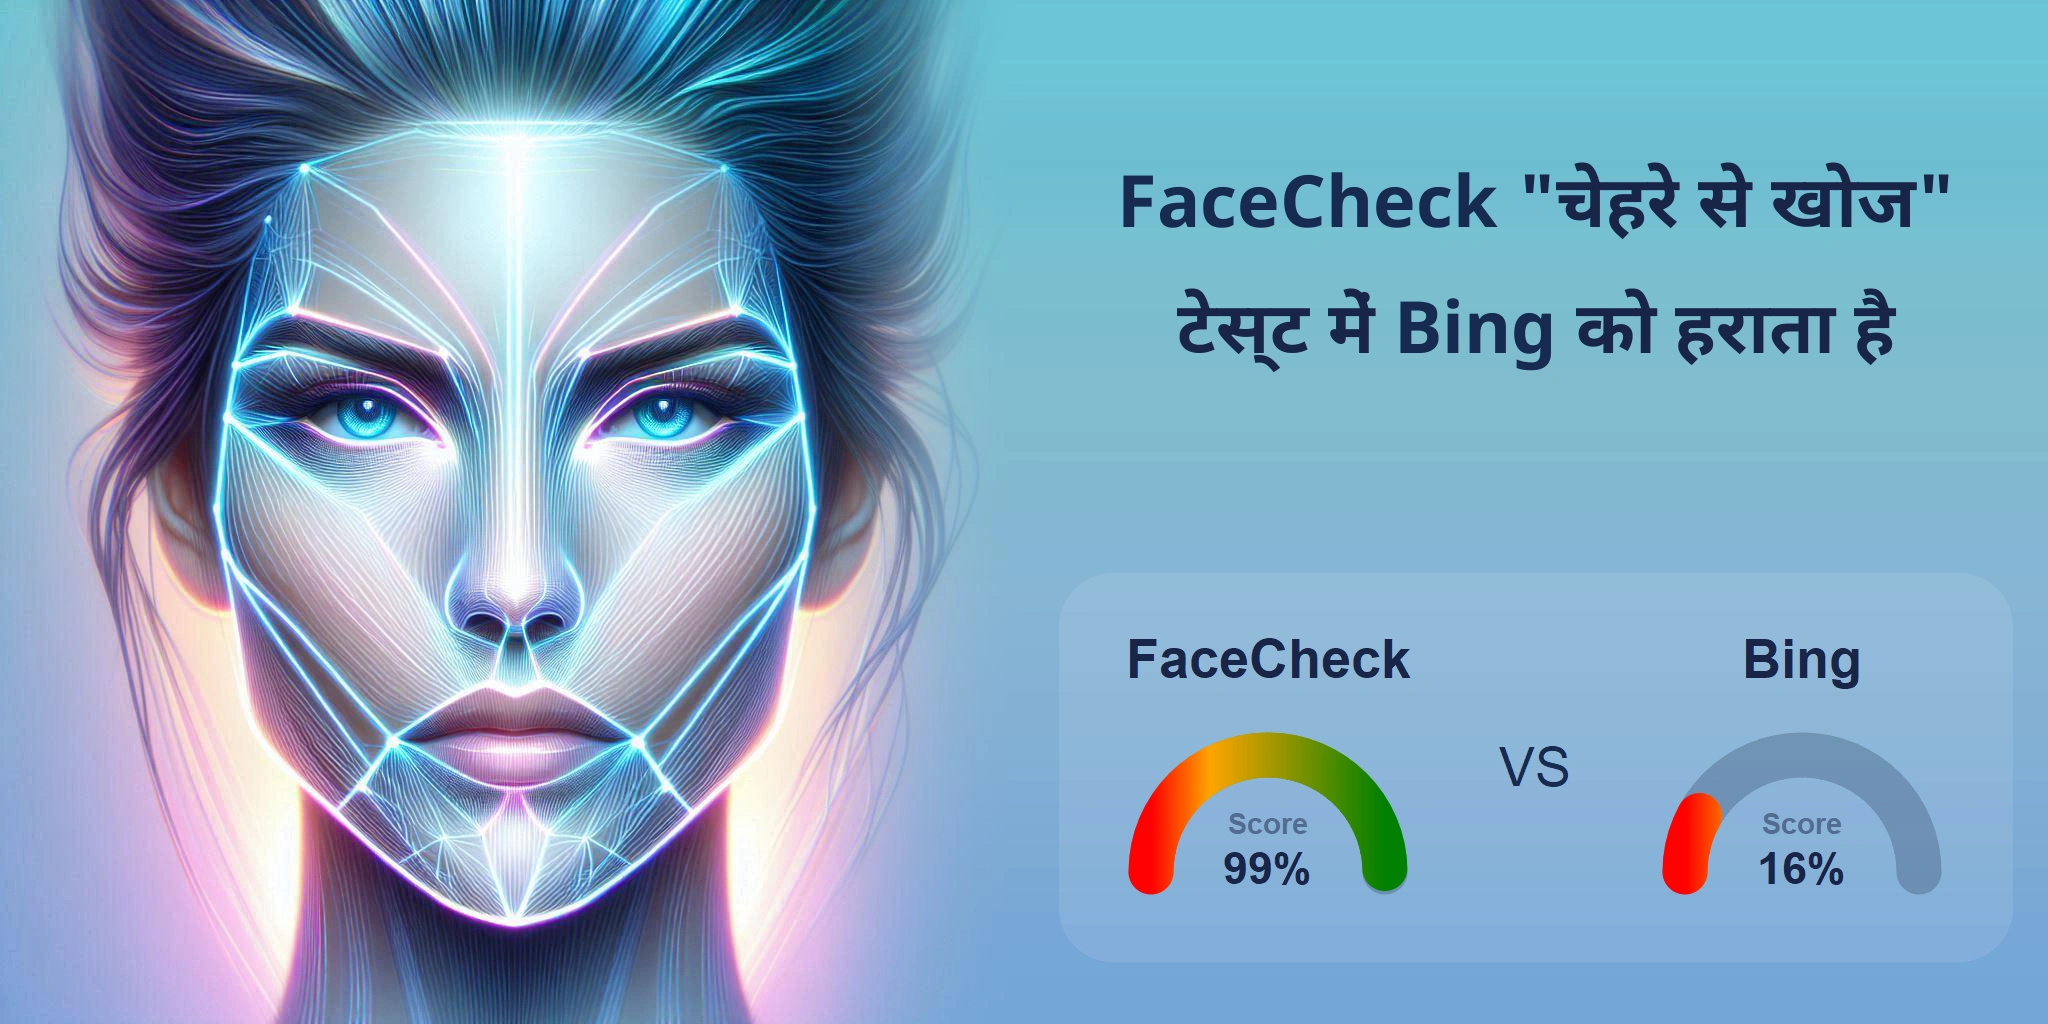 चेहरे की खोज के लिए कौन बेहतर है: <br>FaceCheck या Bing?